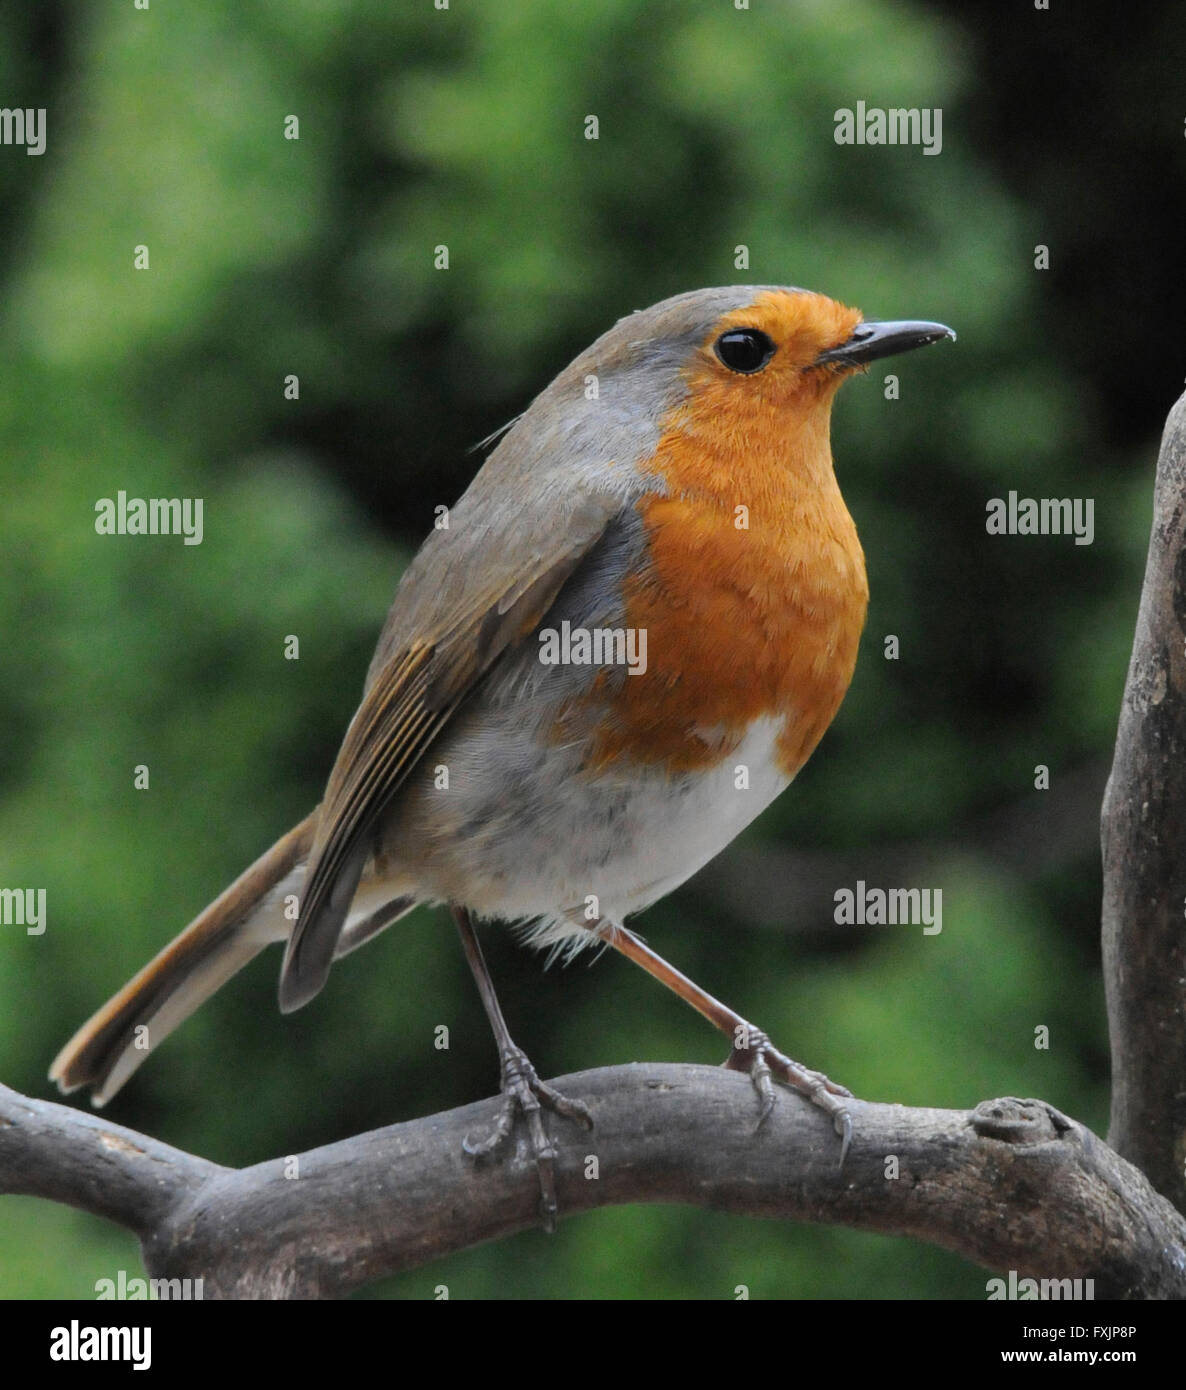 Robin (Erithacus Rubecula) geneigt das Rotkehlchen einen gemeinsamen Garten Vogel, Aggression zu anderen Robins zeigen. Männchen und Weibchen haben die roten bre Stockfoto